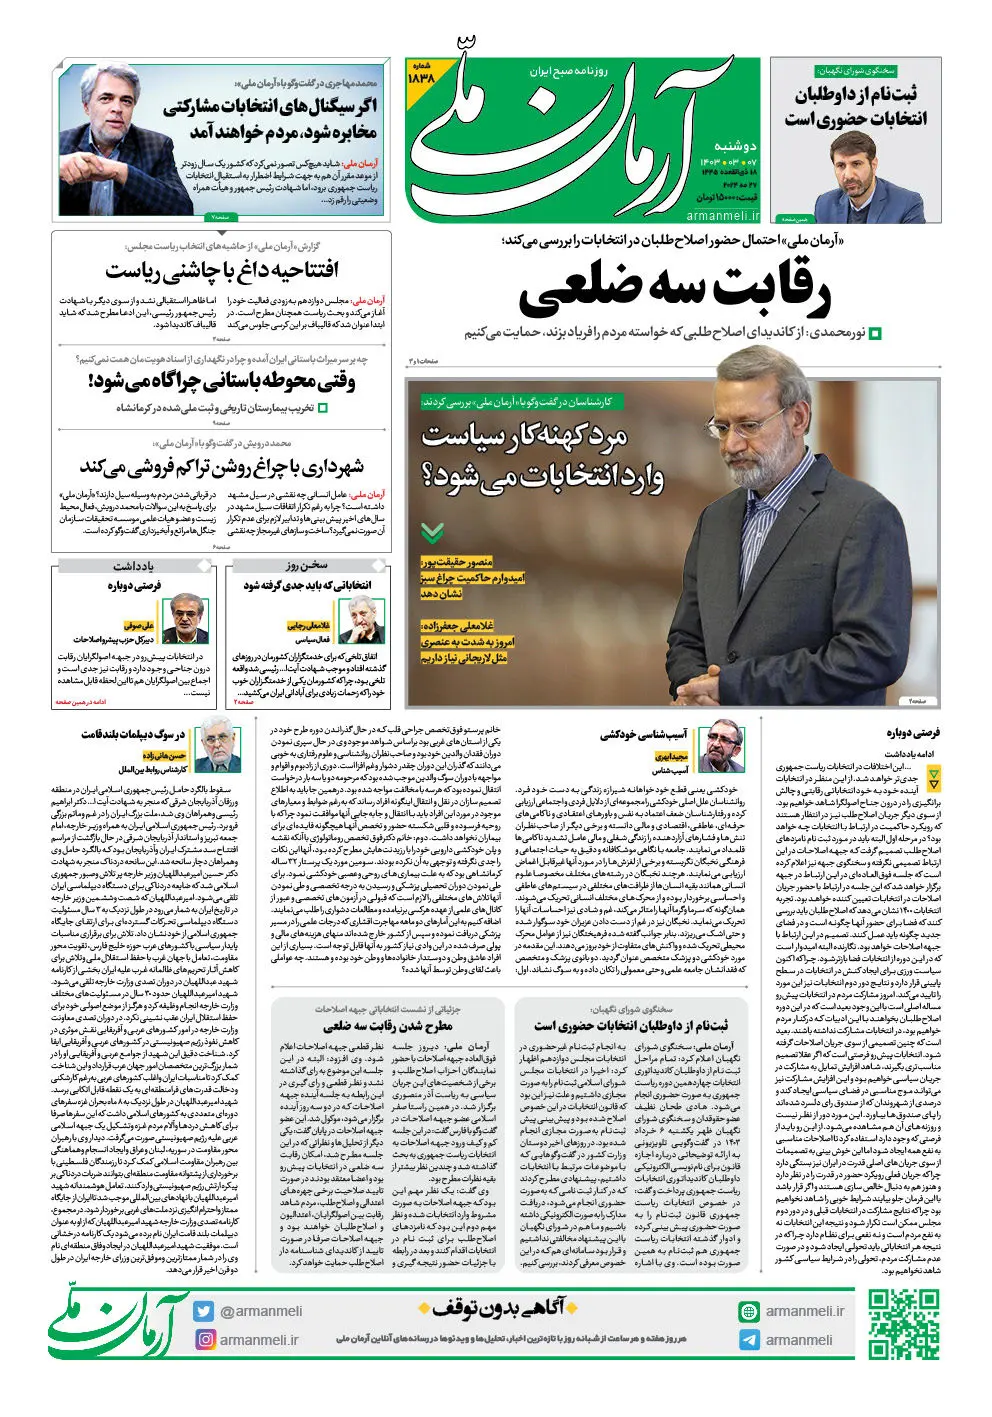 روزنامه آرمان ملی - دوشنبه 7 خرداد - شماره 1838